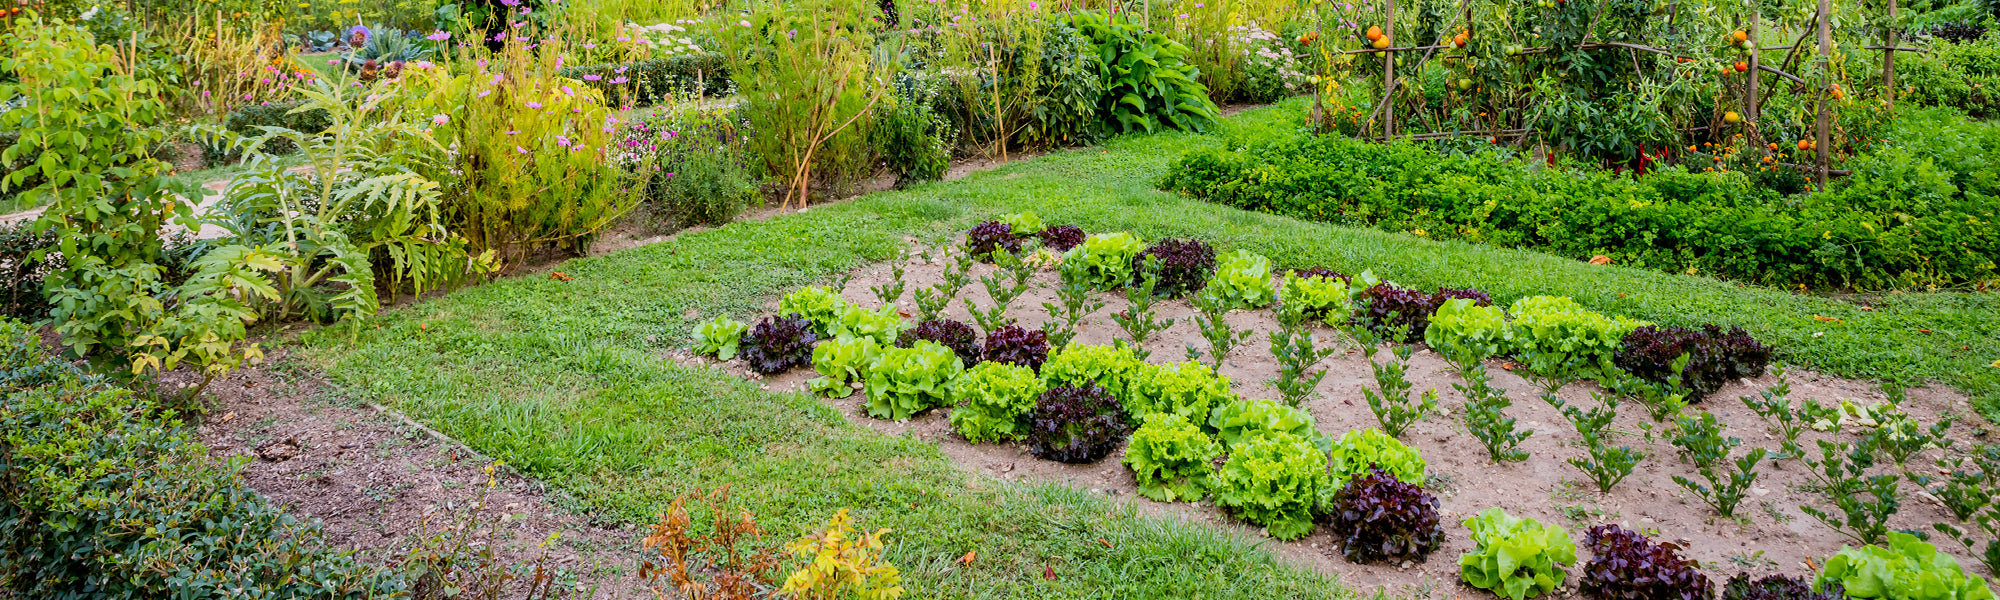 Comment protéger mon jardin potager de la pluie ? - Gamm vert